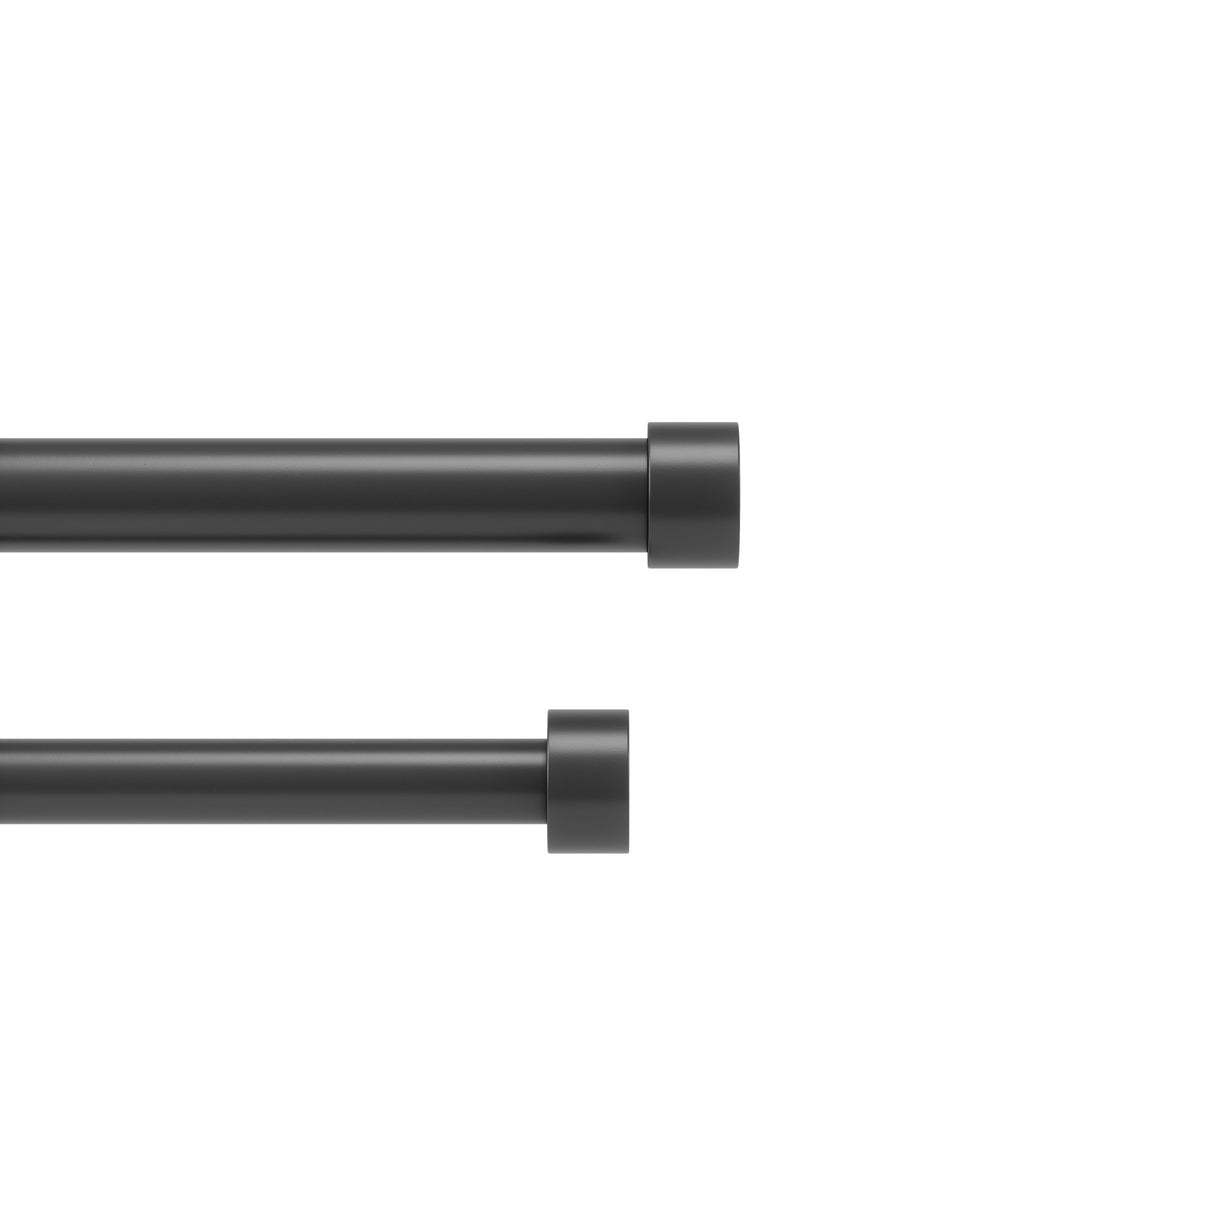 Double Curtain Rods | color: Brushed-Black | size: 36-66" (91-168 cm) | diameter: 1" (2.5 cm)